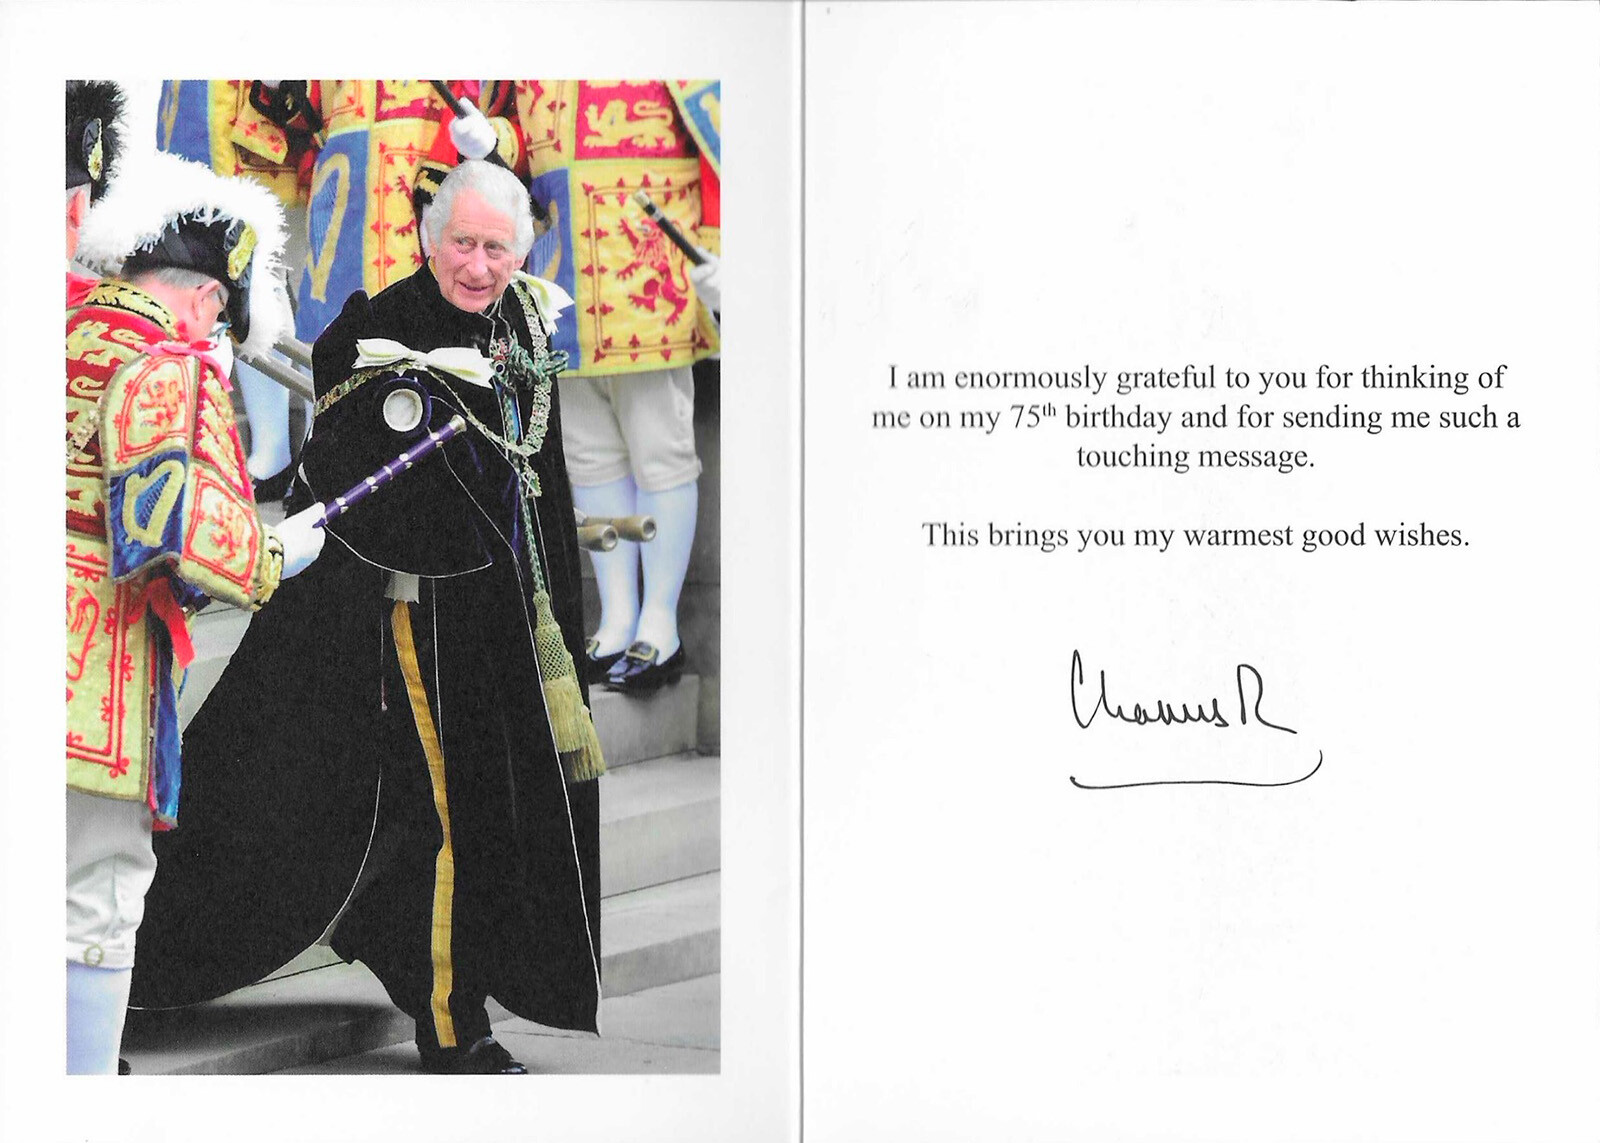 Карл III выбрал особую фотографию для благодарственных писем, которые он разошлёт своим поклонникам